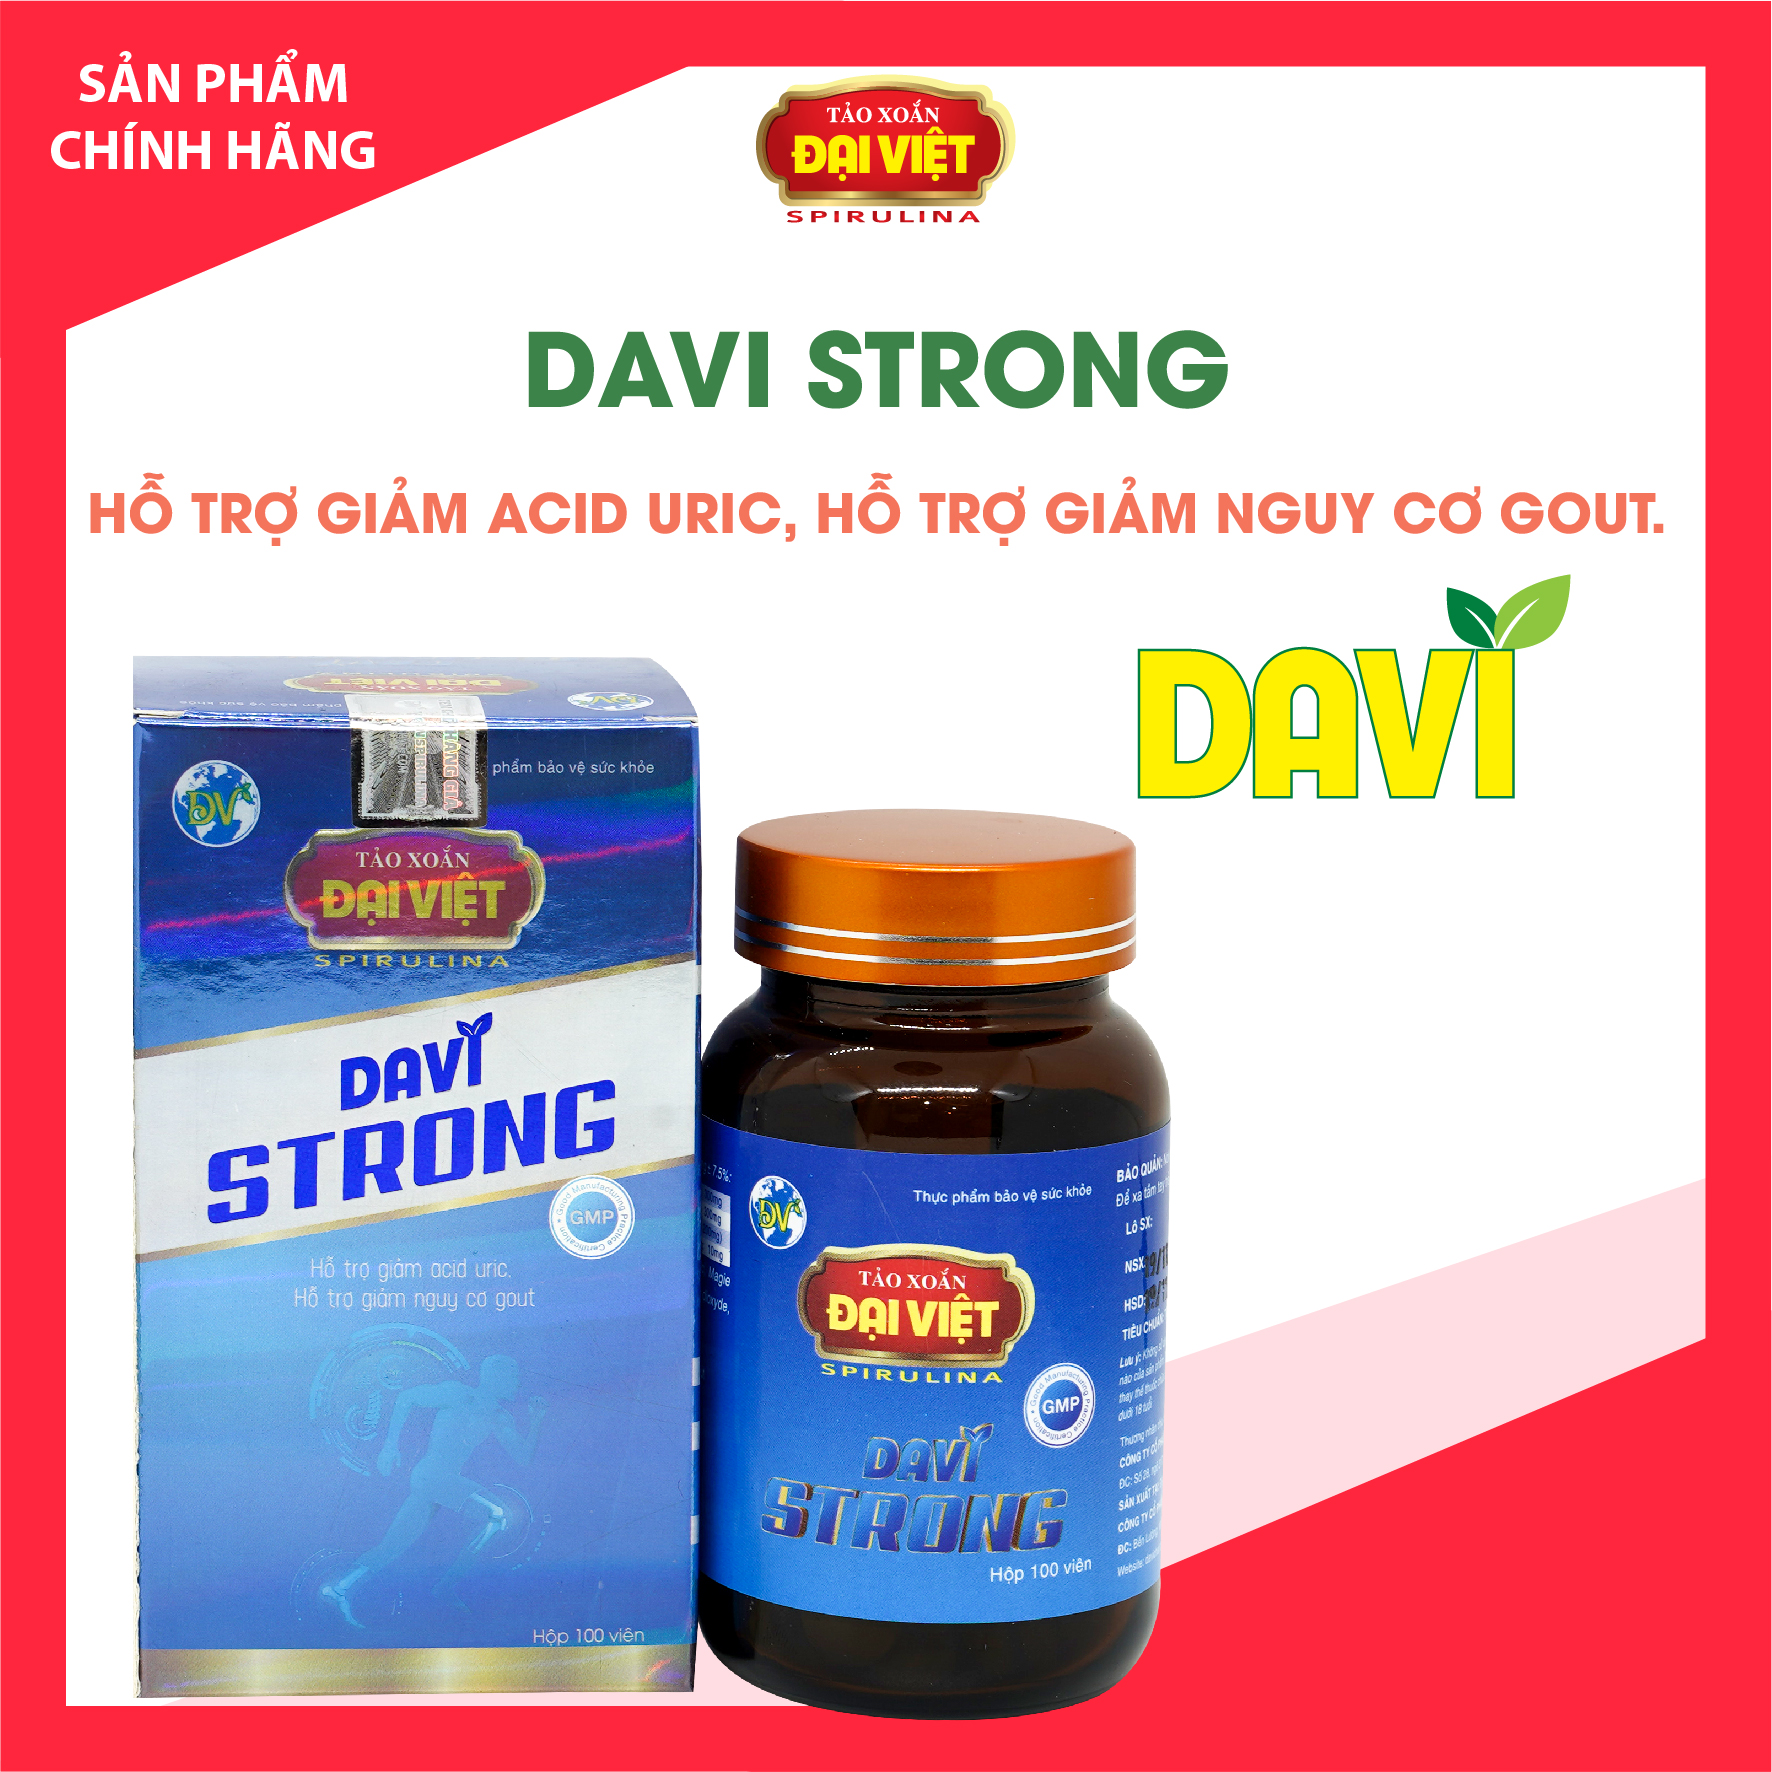 Tảo xoắn Đại Việt Thực phẩm bảo vệ sức khỏe Davi Strong Viên uống Spirulina hỗ trợ giảm nguy cơ Gout. Lọ 100v